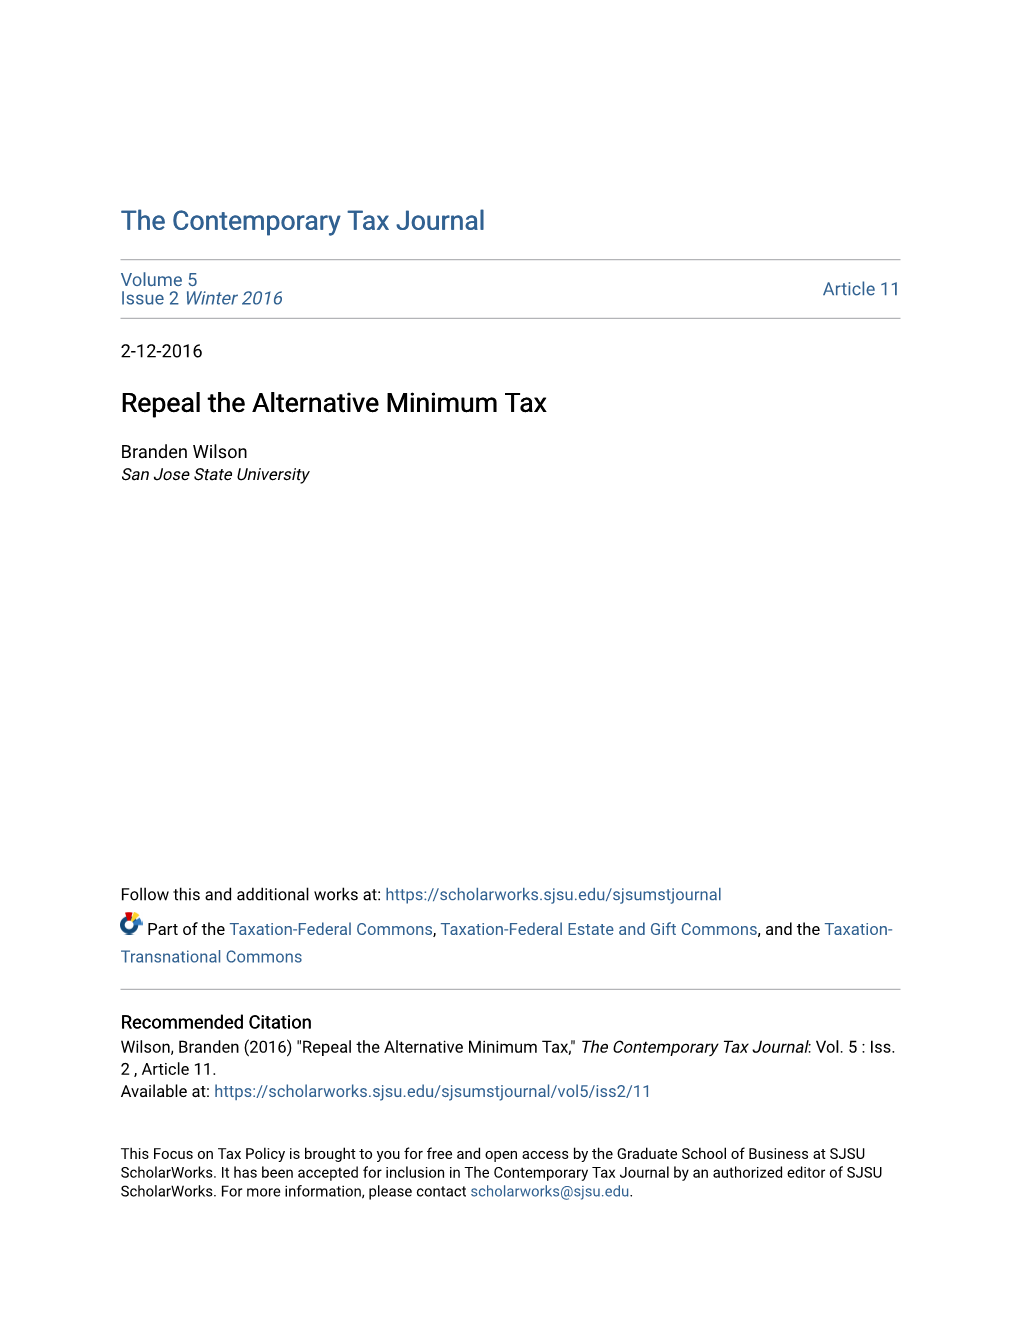 Repeal the Alternative Minimum Tax